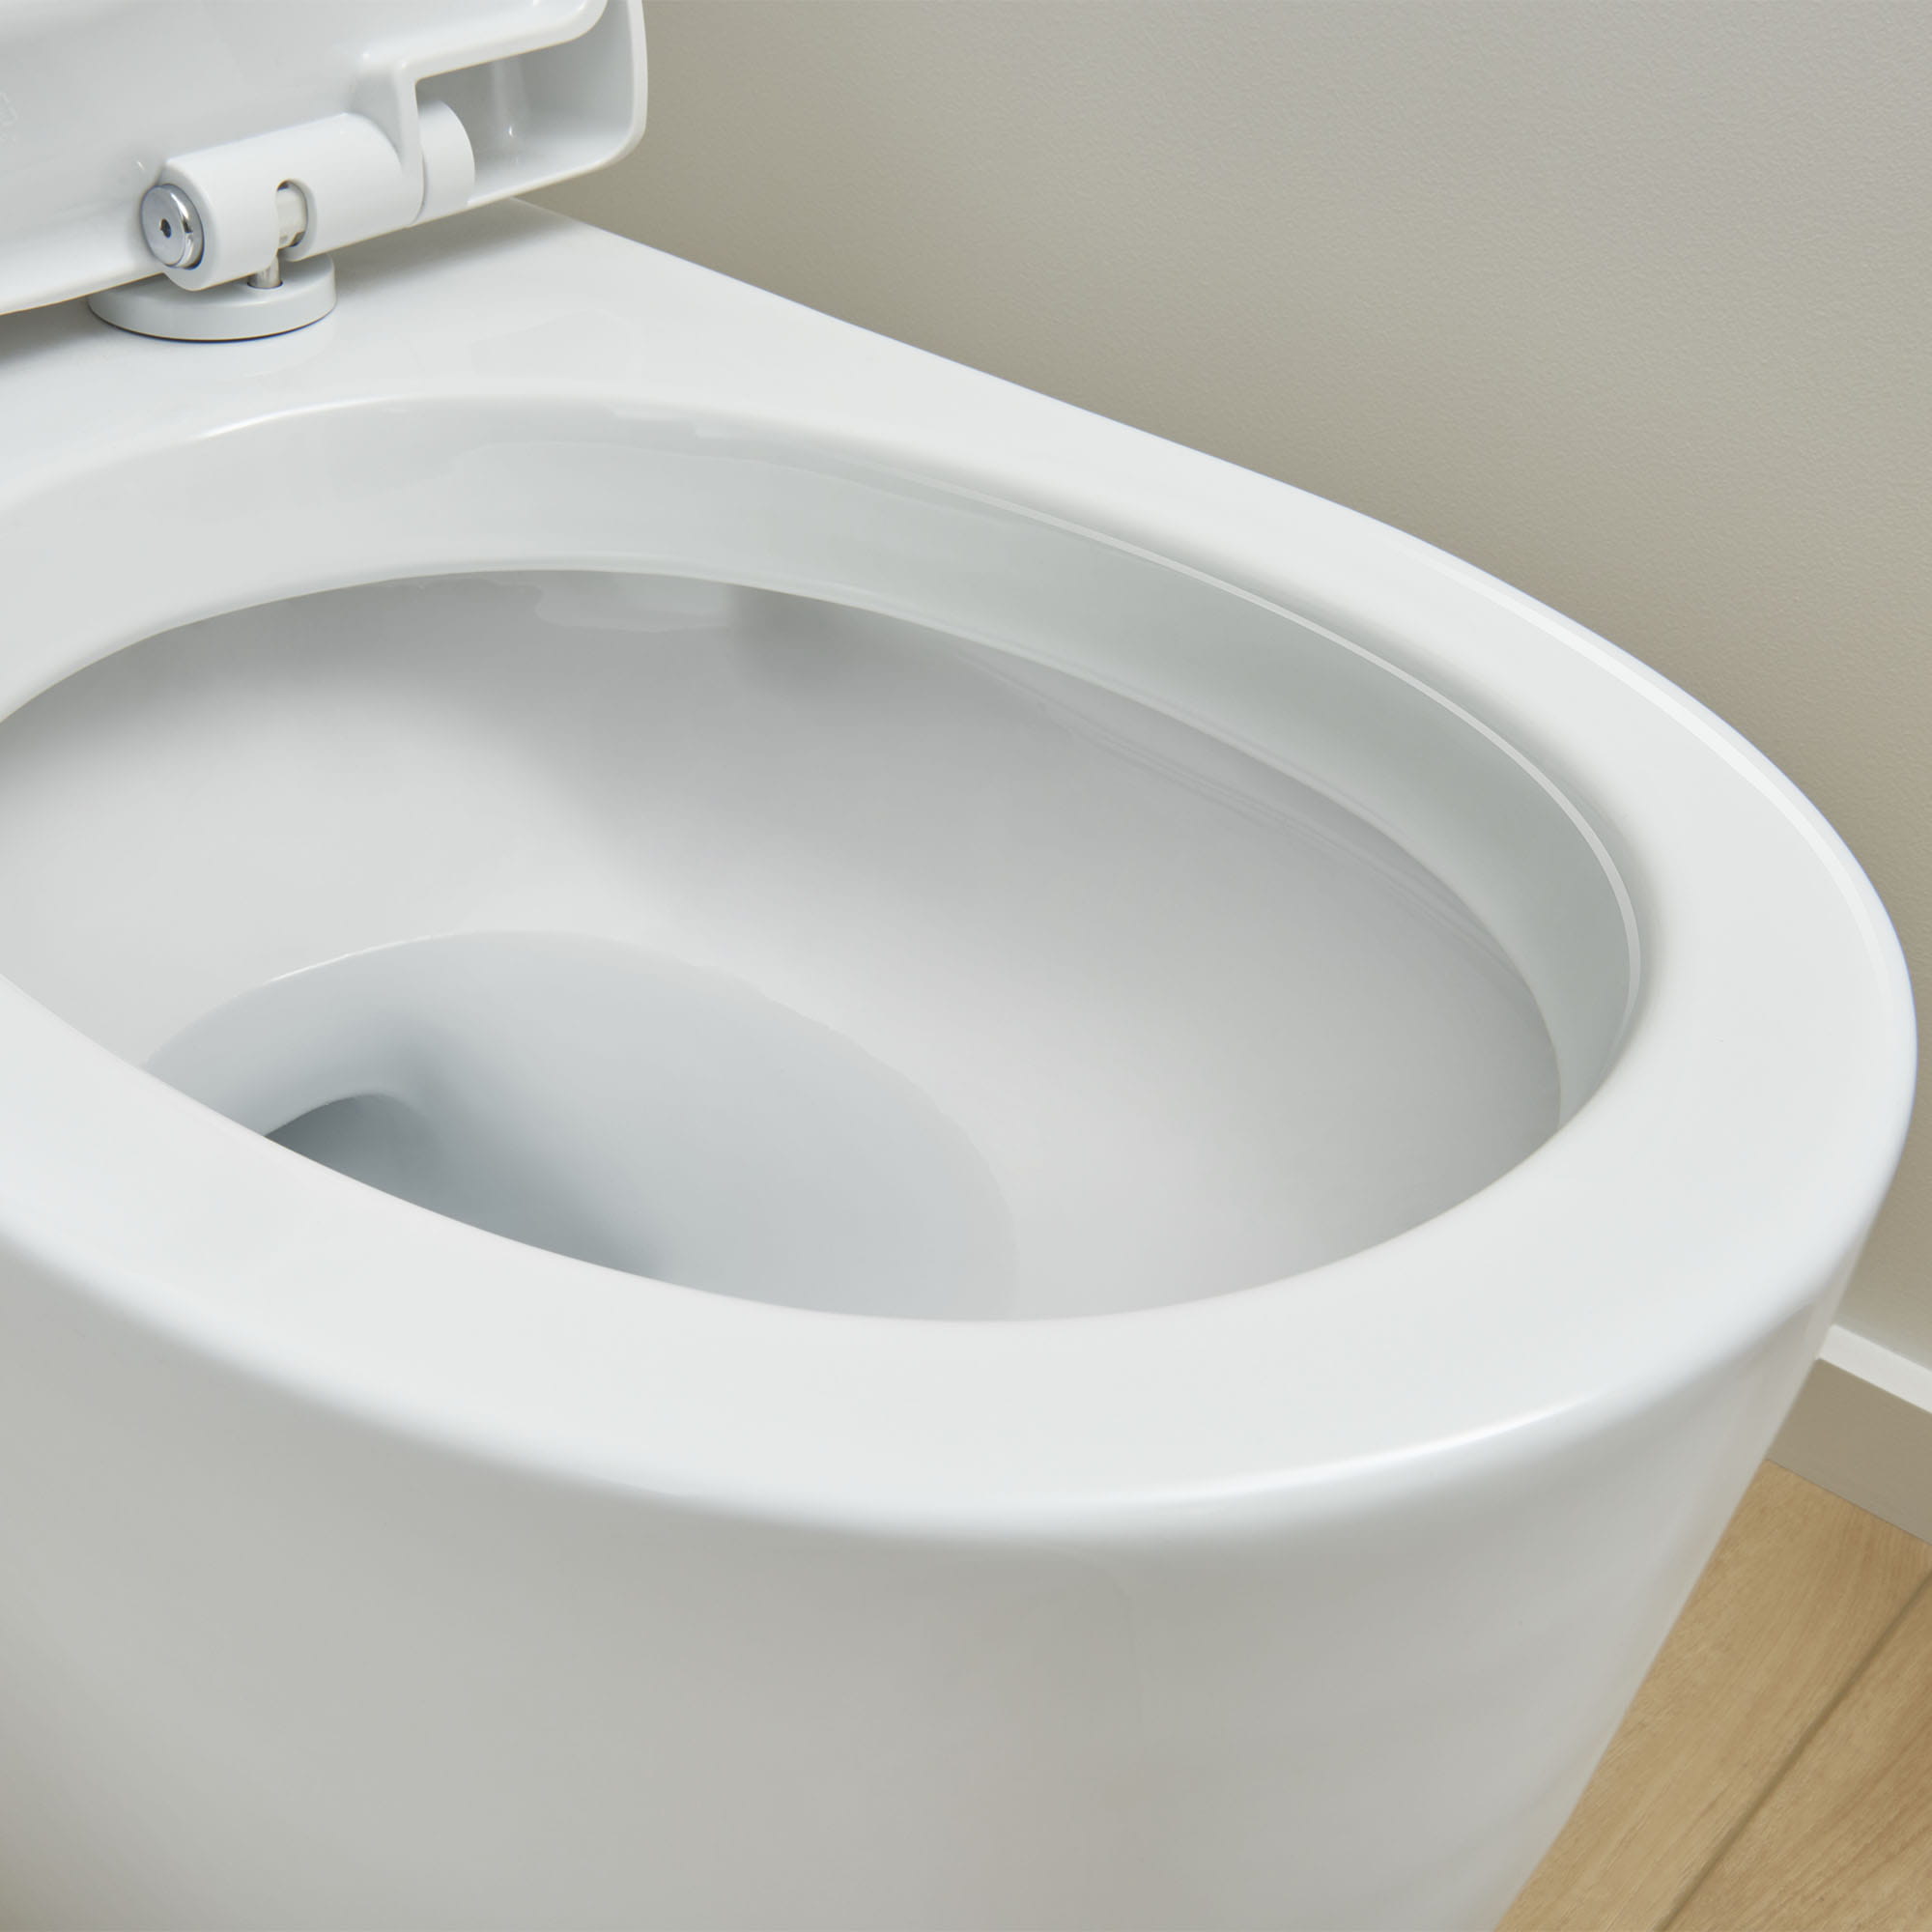 Toilette allongée en deux pièces, Hauteur idéale avec chasse double et siège inclus, 4,8 lpc (1,28 gpc)